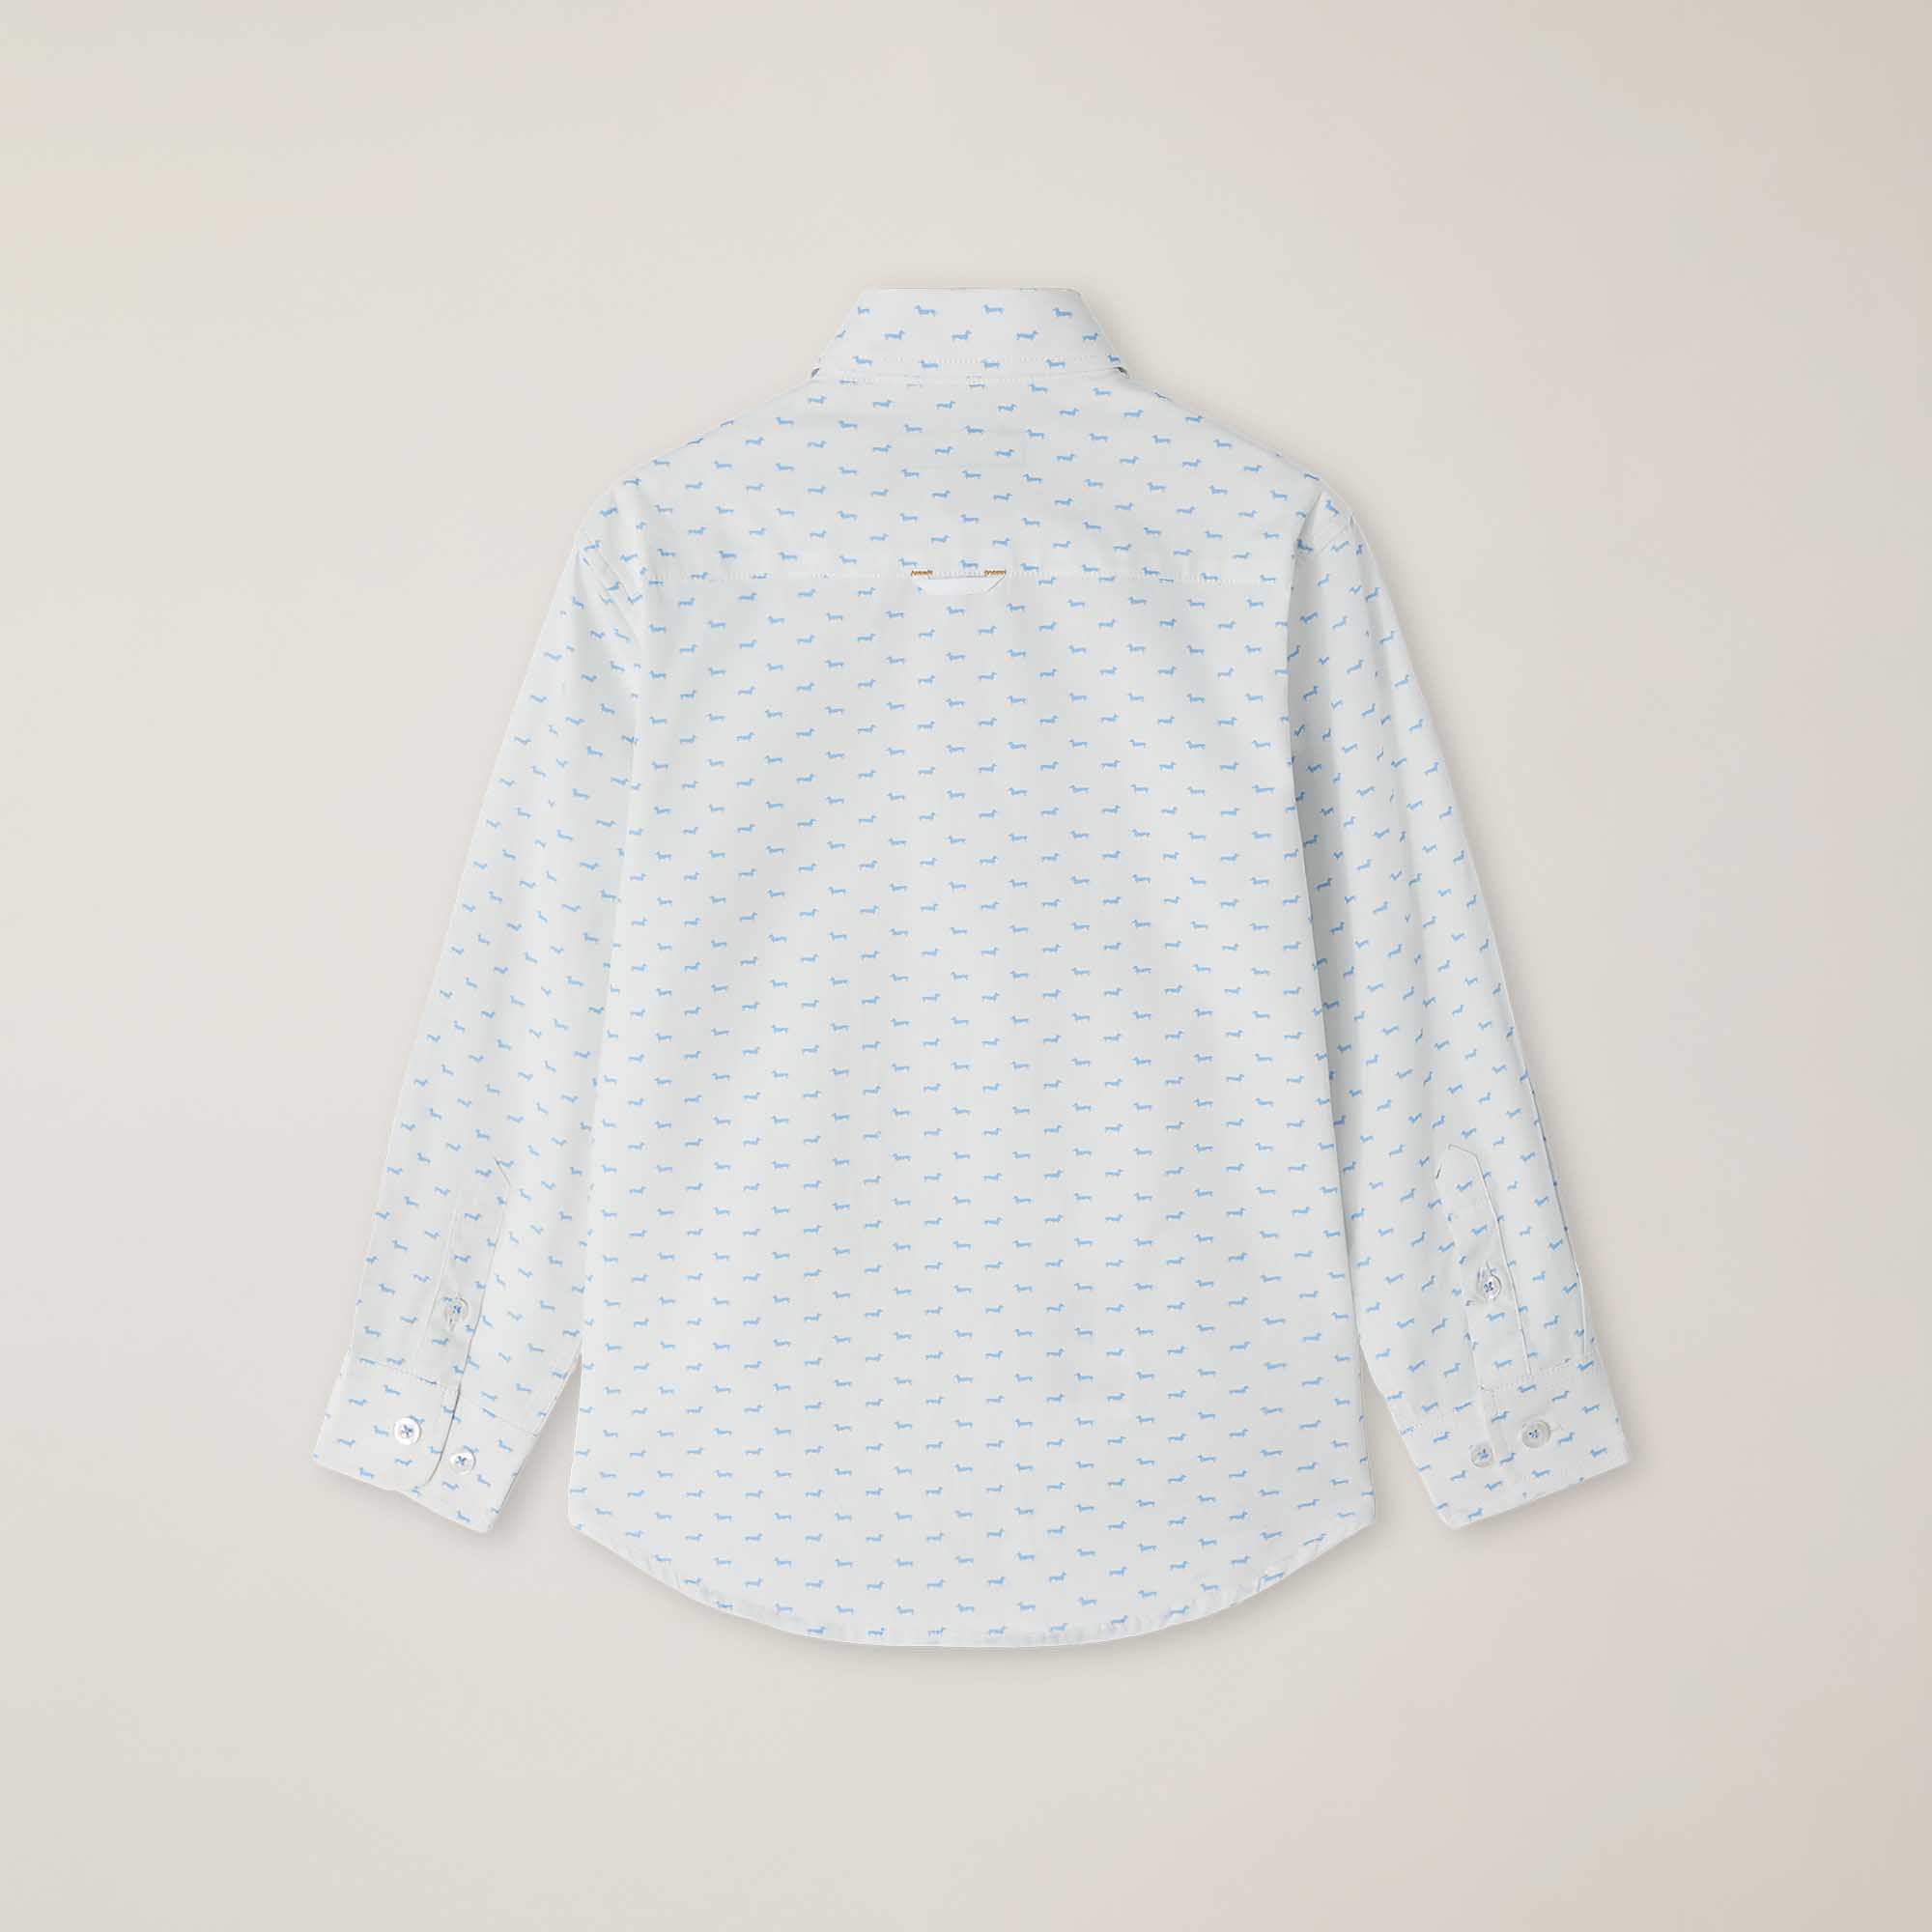 Camisa de popelina con microestampado de teckels, Blanco, large image number 1